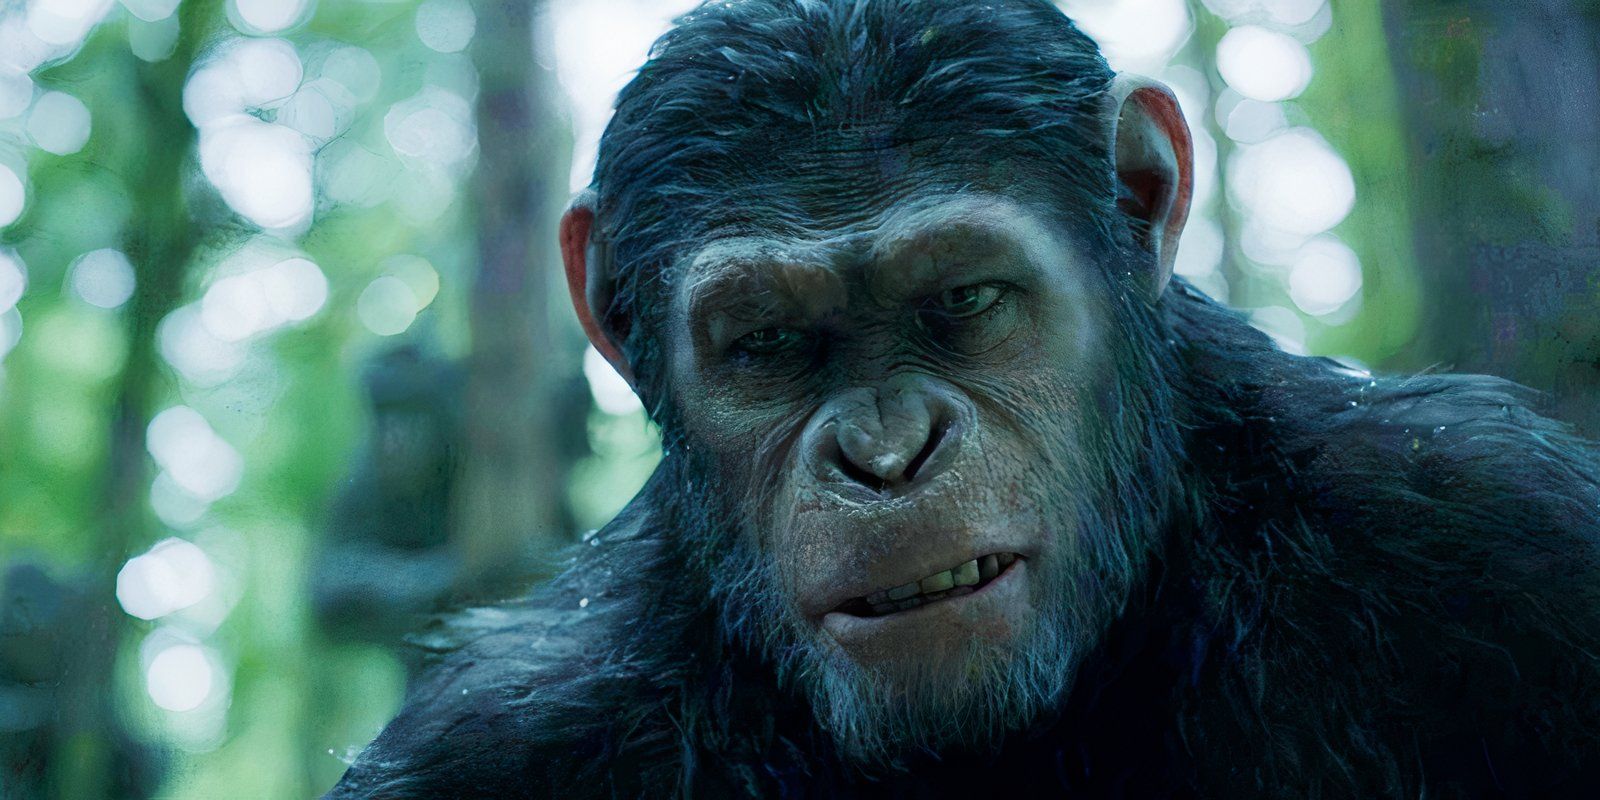 “Tan realista”: la primera película de Matt Reeves El planeta de los simios recibe grandes elogios de un experto en simios